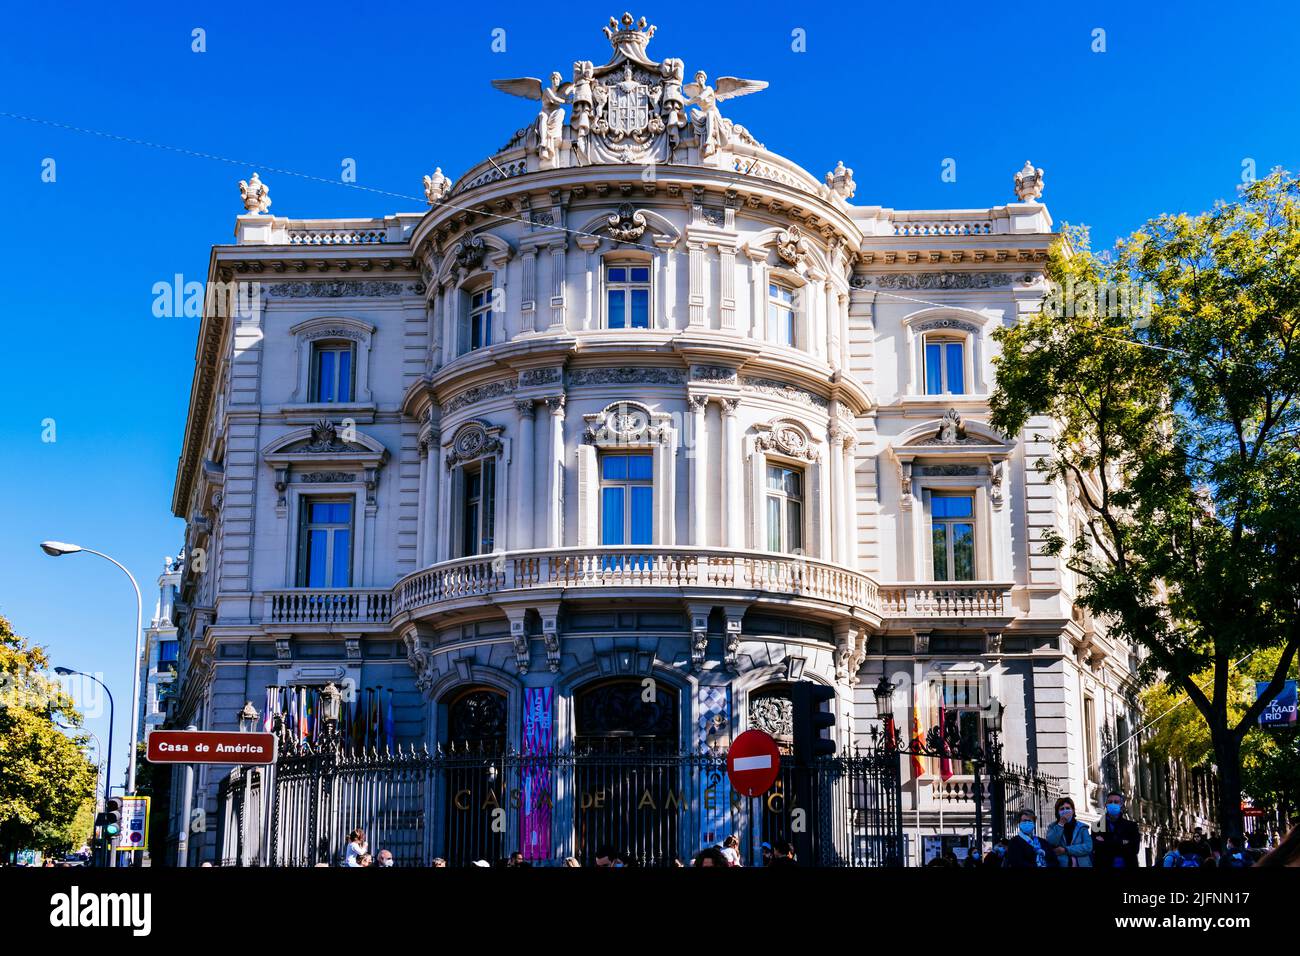 Il Palazzo di Linares, Palacio de Linares, è un palazzo situato a Madrid. È stato dichiarato monumento storico-artistico nazionale. Situato in plaza de Foto Stock